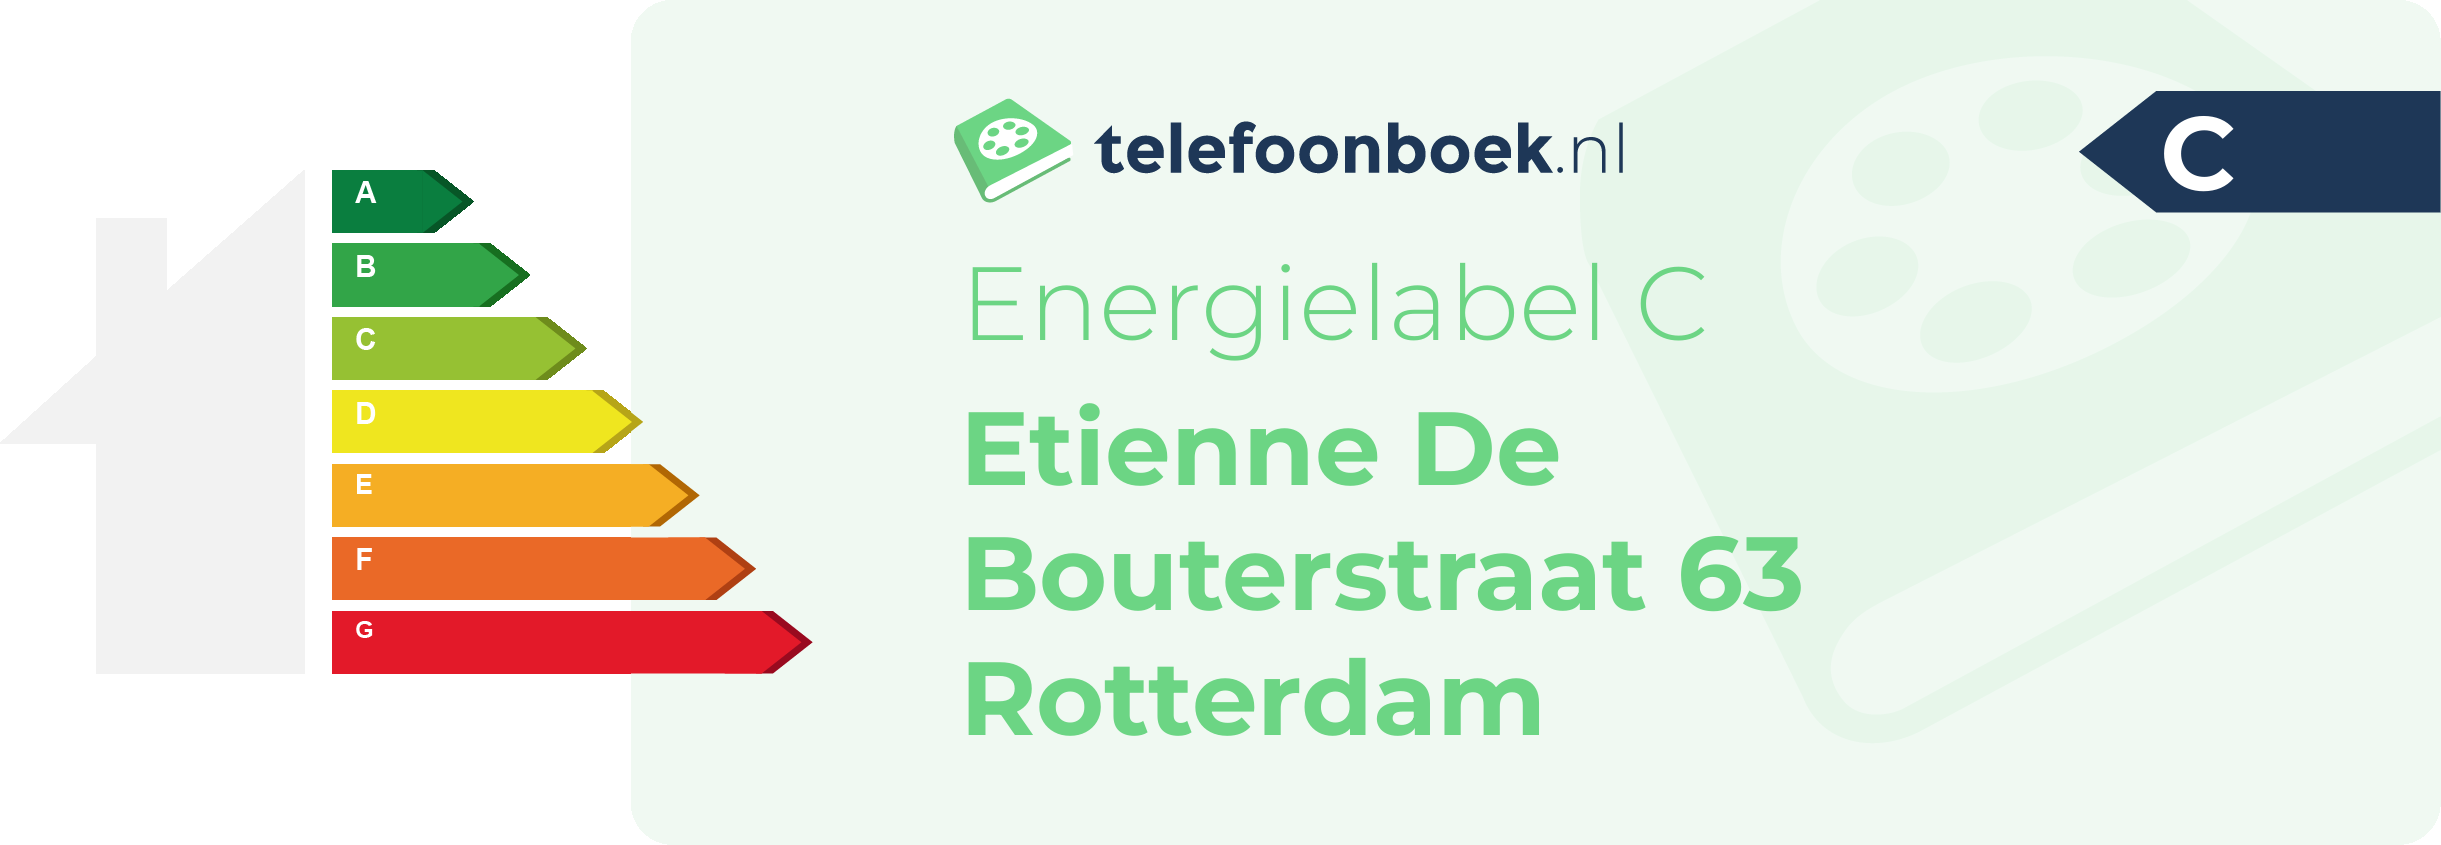 Energielabel Etienne De Bouterstraat 63 Rotterdam